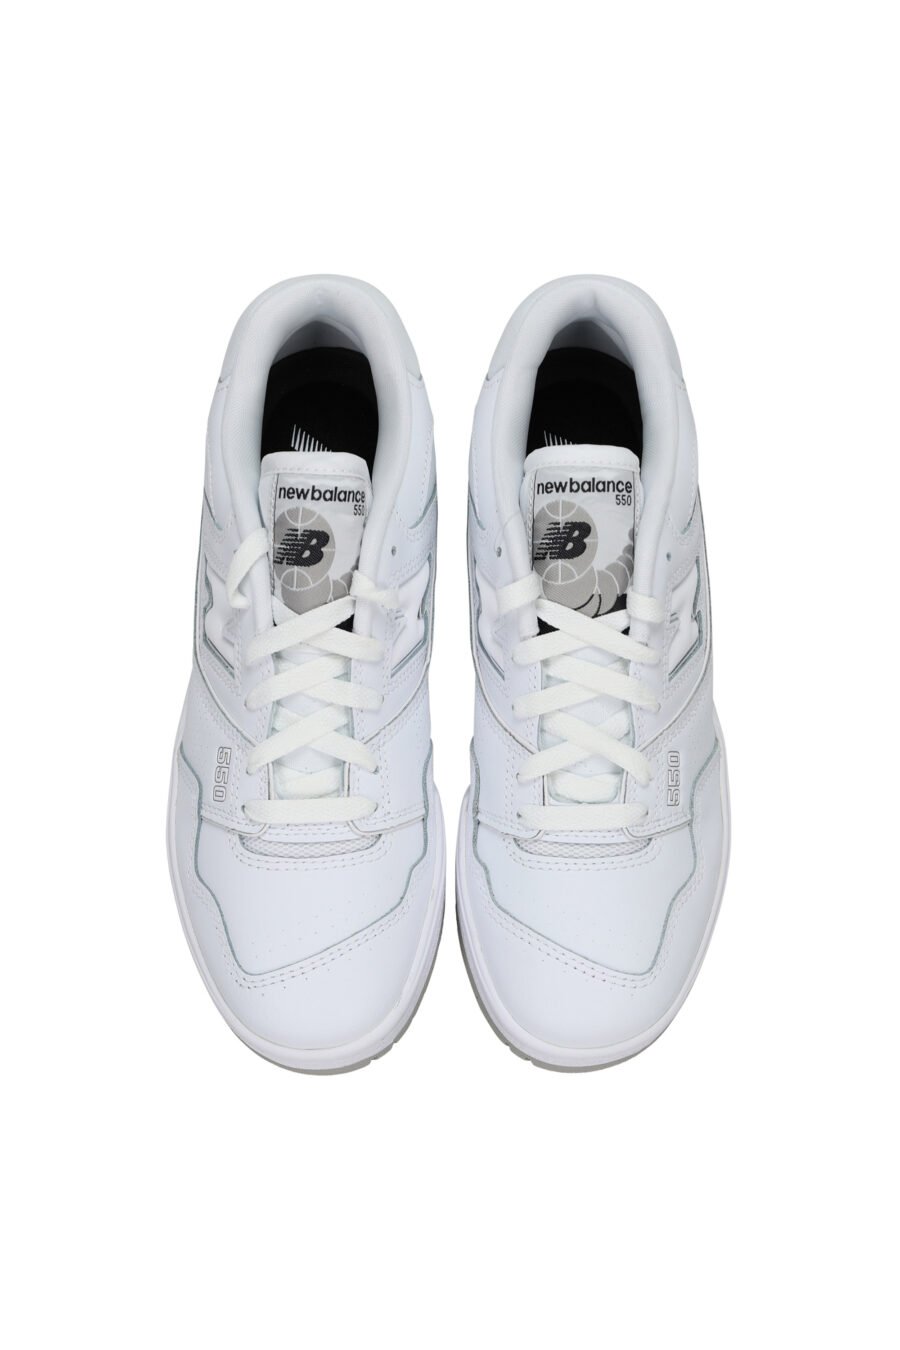 Zapatillas blancas mix con gris "550" y logo "N" blanco - 194768756931 4